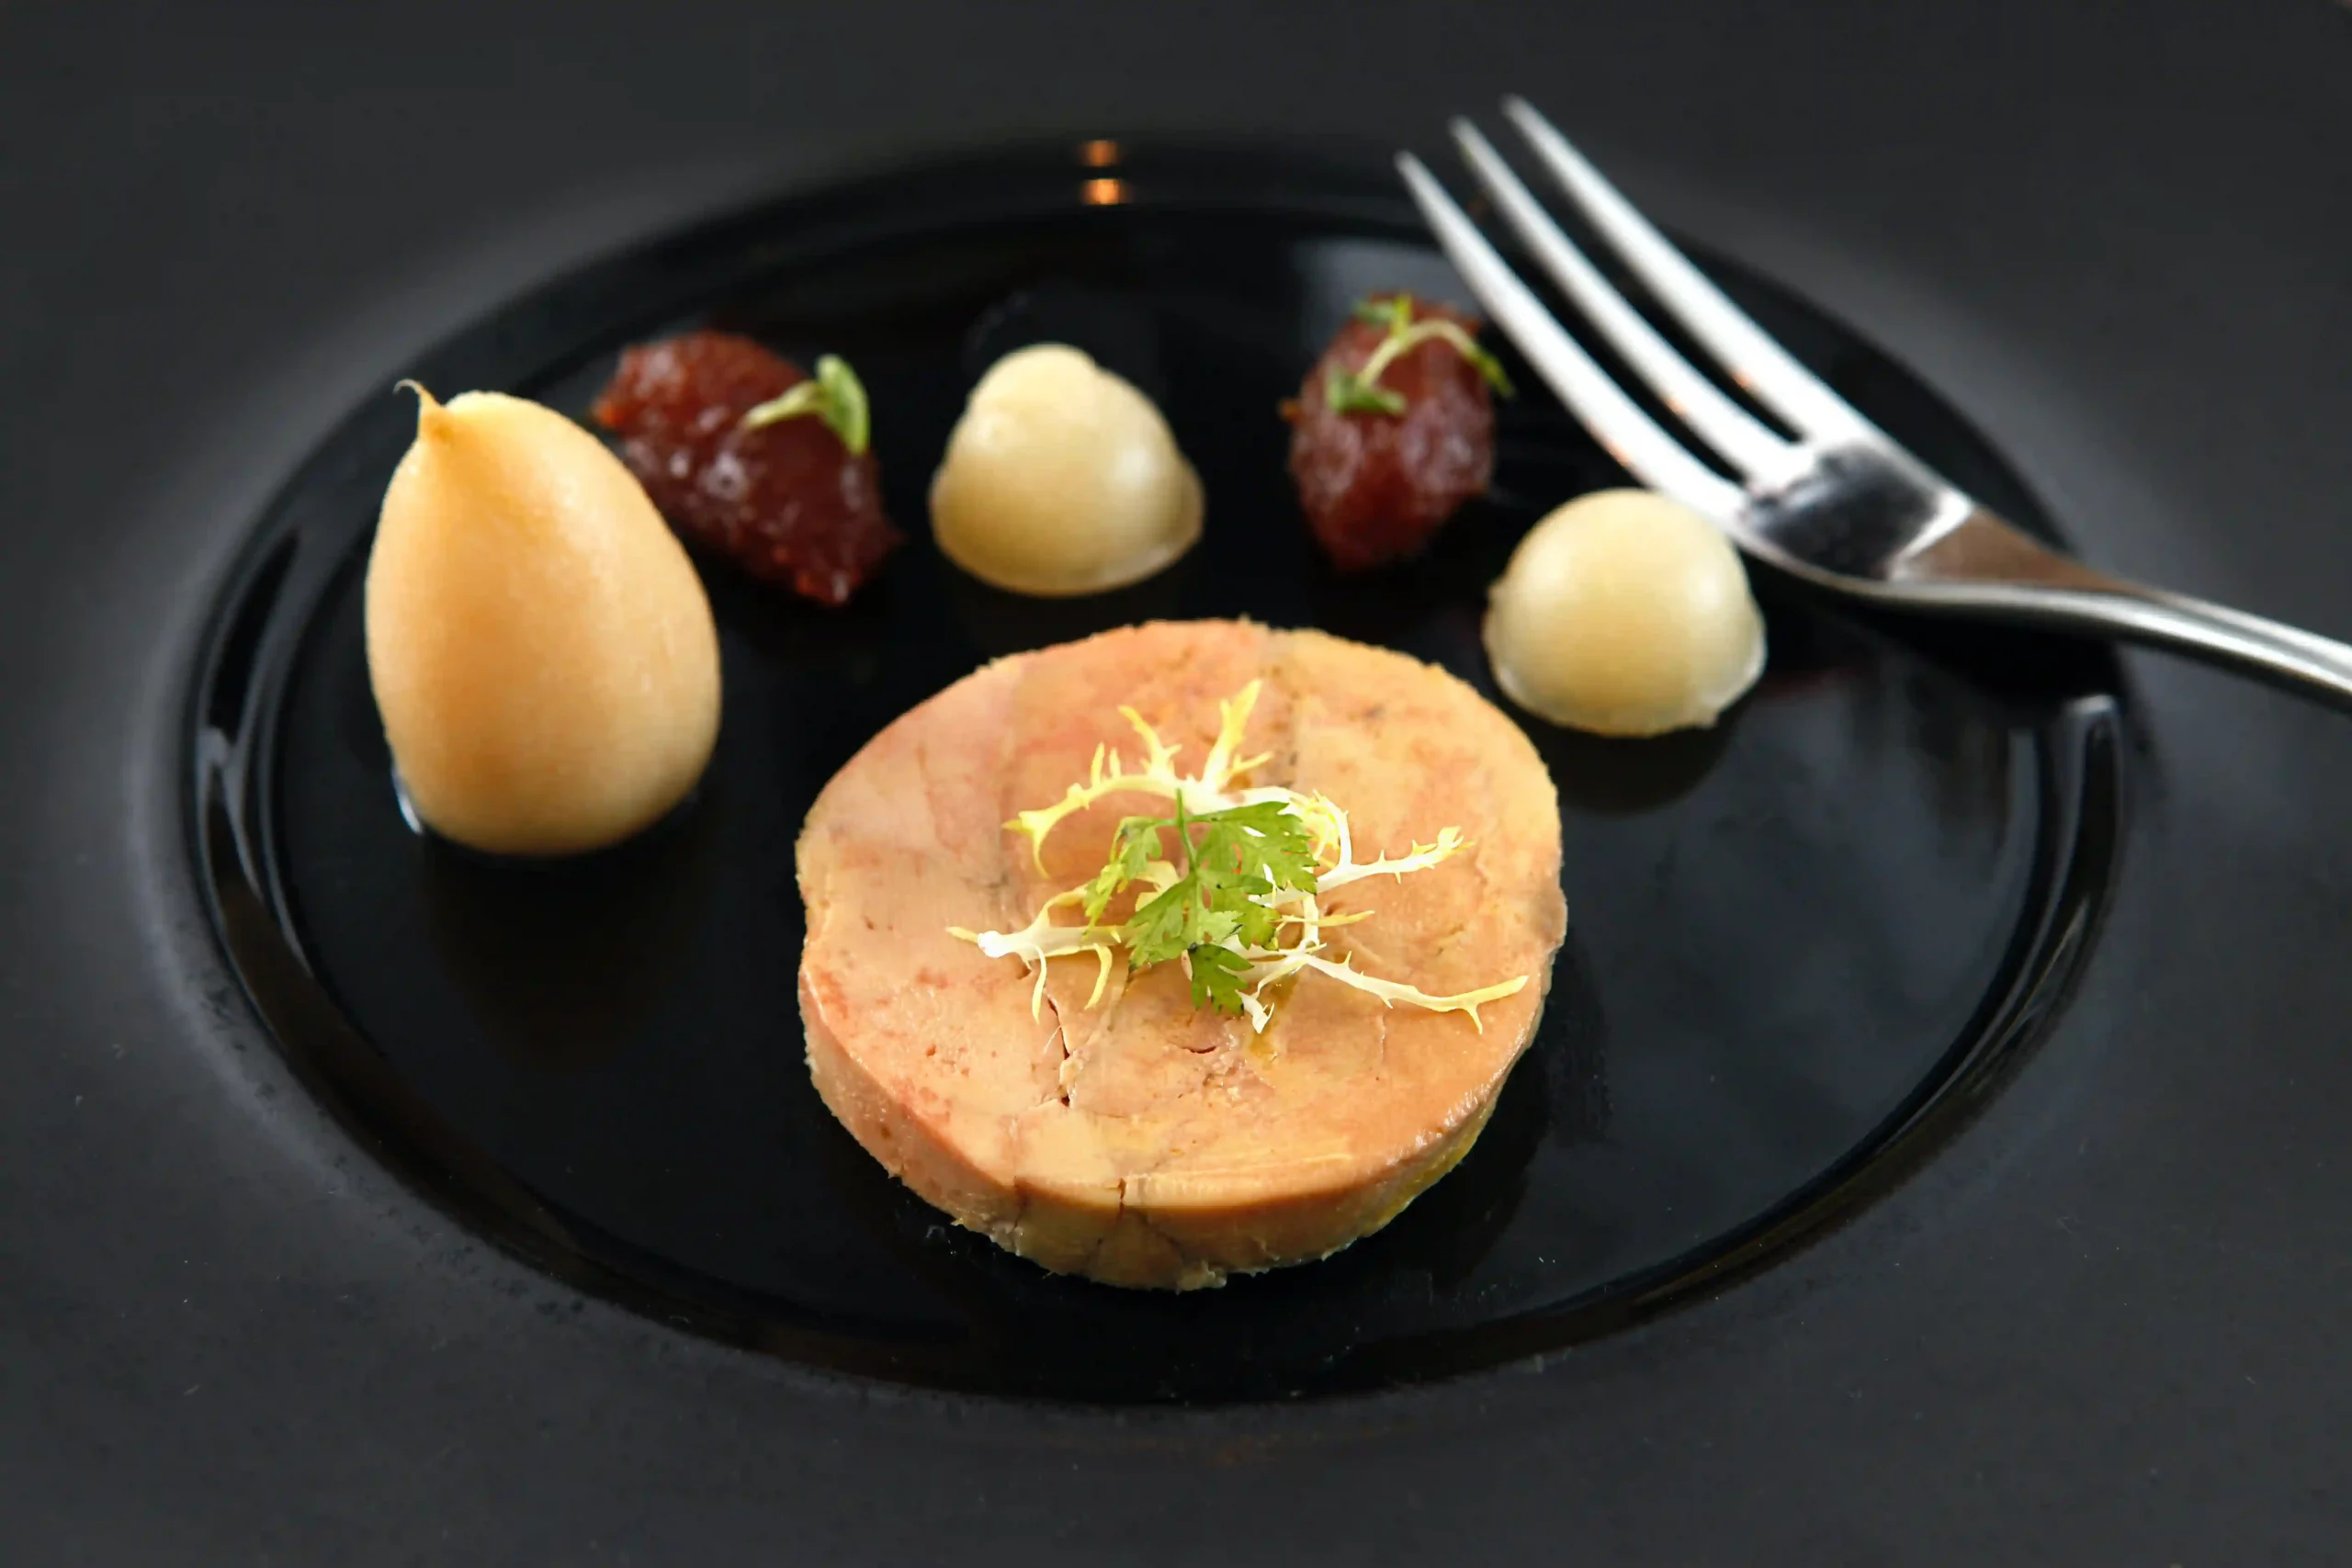 Les femmes enceintes peuvent-elles manger du foie gras ?